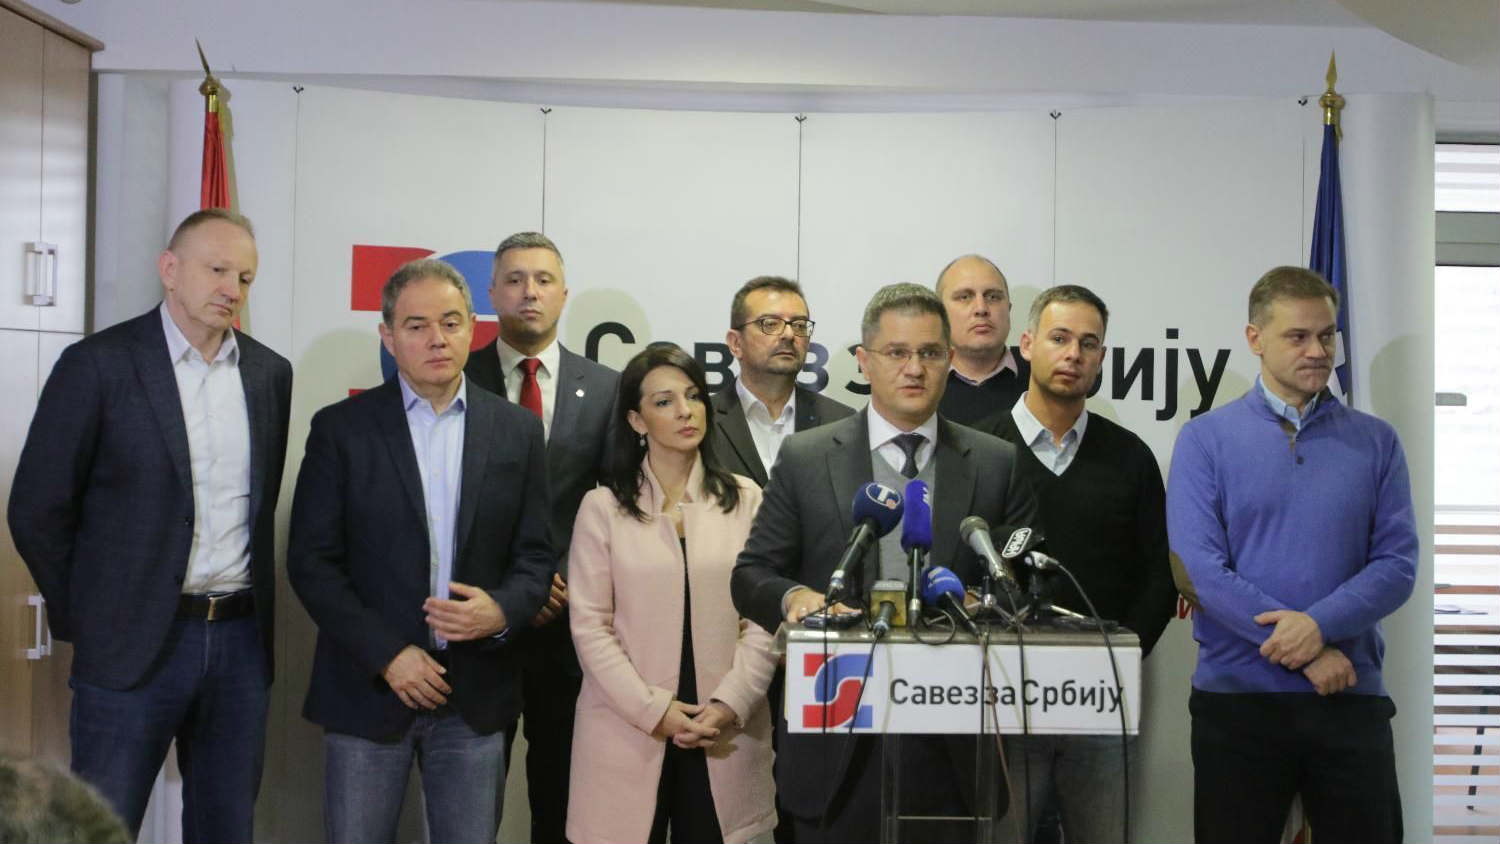 SZS i ostale organizacije 19. februara u Kragujevcu zvanično počinju kampanju bojkota 1